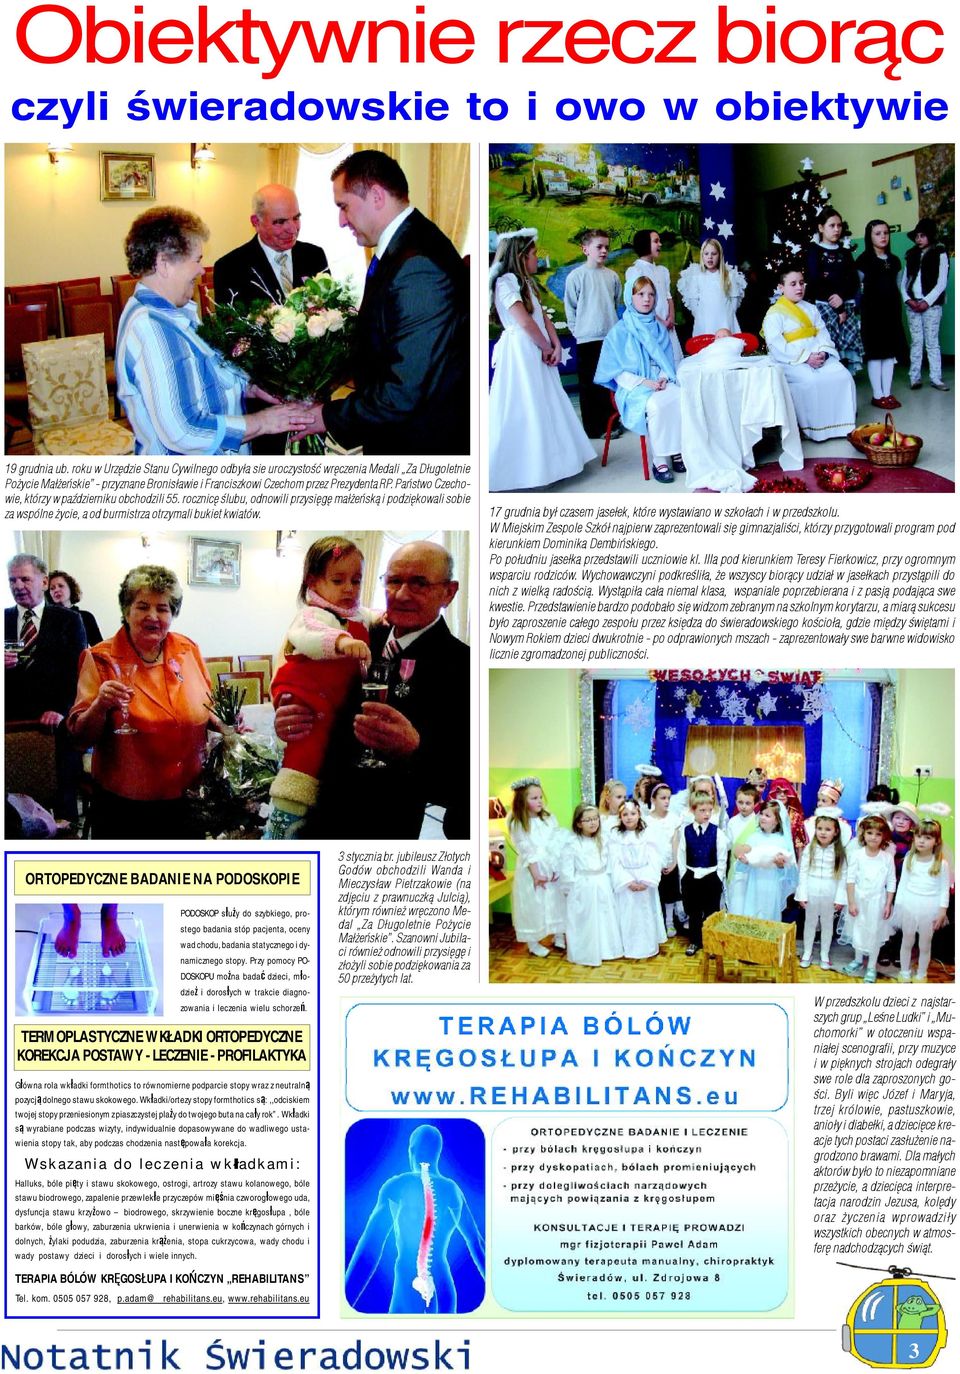 Pañstwo Czechowie, którzy w paÿdzierniku obchodzili 55. rocznicê œlubu, odnowili przysiêgê ma³ eñsk¹ i podziêkowali sobie za wspólne ycie, a od burmistrza otrzymali bukiet kwiatów.